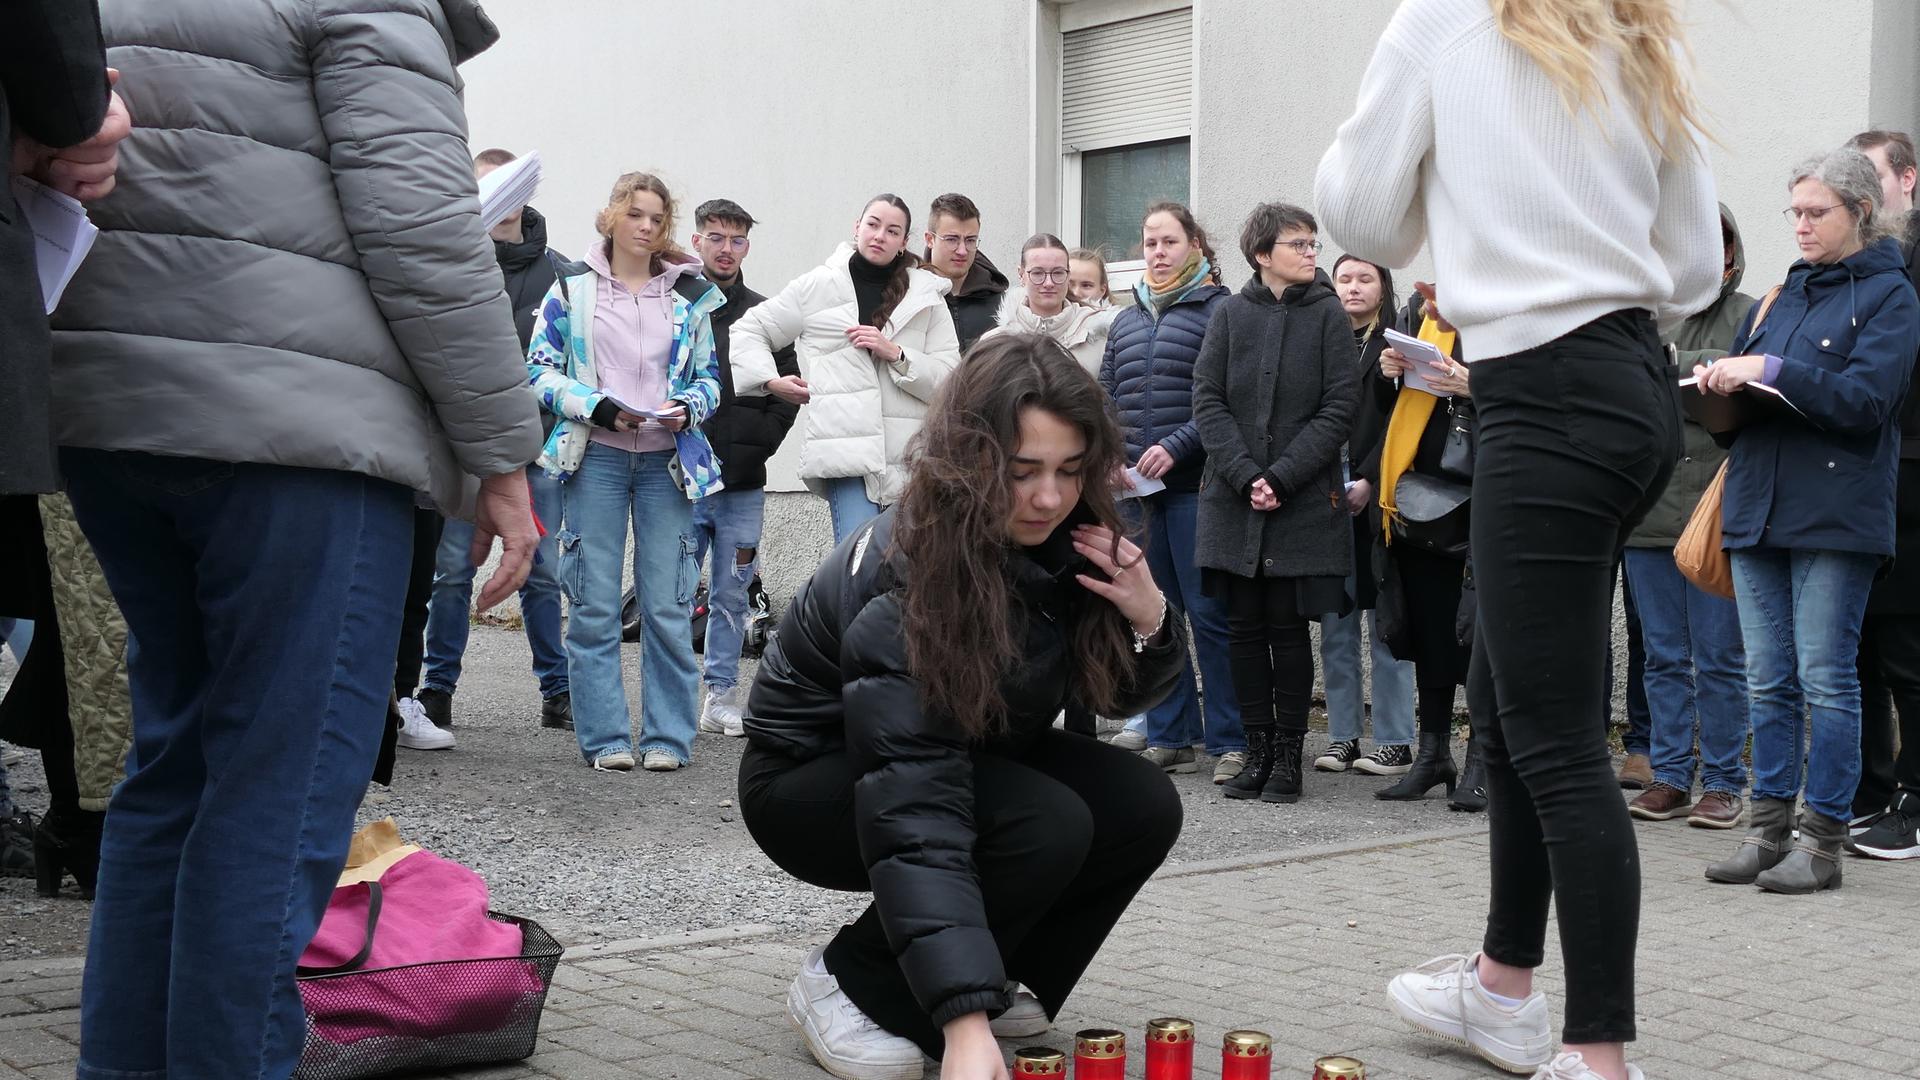 Engagiert sich für den Frieden: Melina Krauß berichtet den Anwesenden vom Schicksal der Deportierten. Zur Erinnerung an die Betroffenen legt die Schülerin eine Blume nieder.